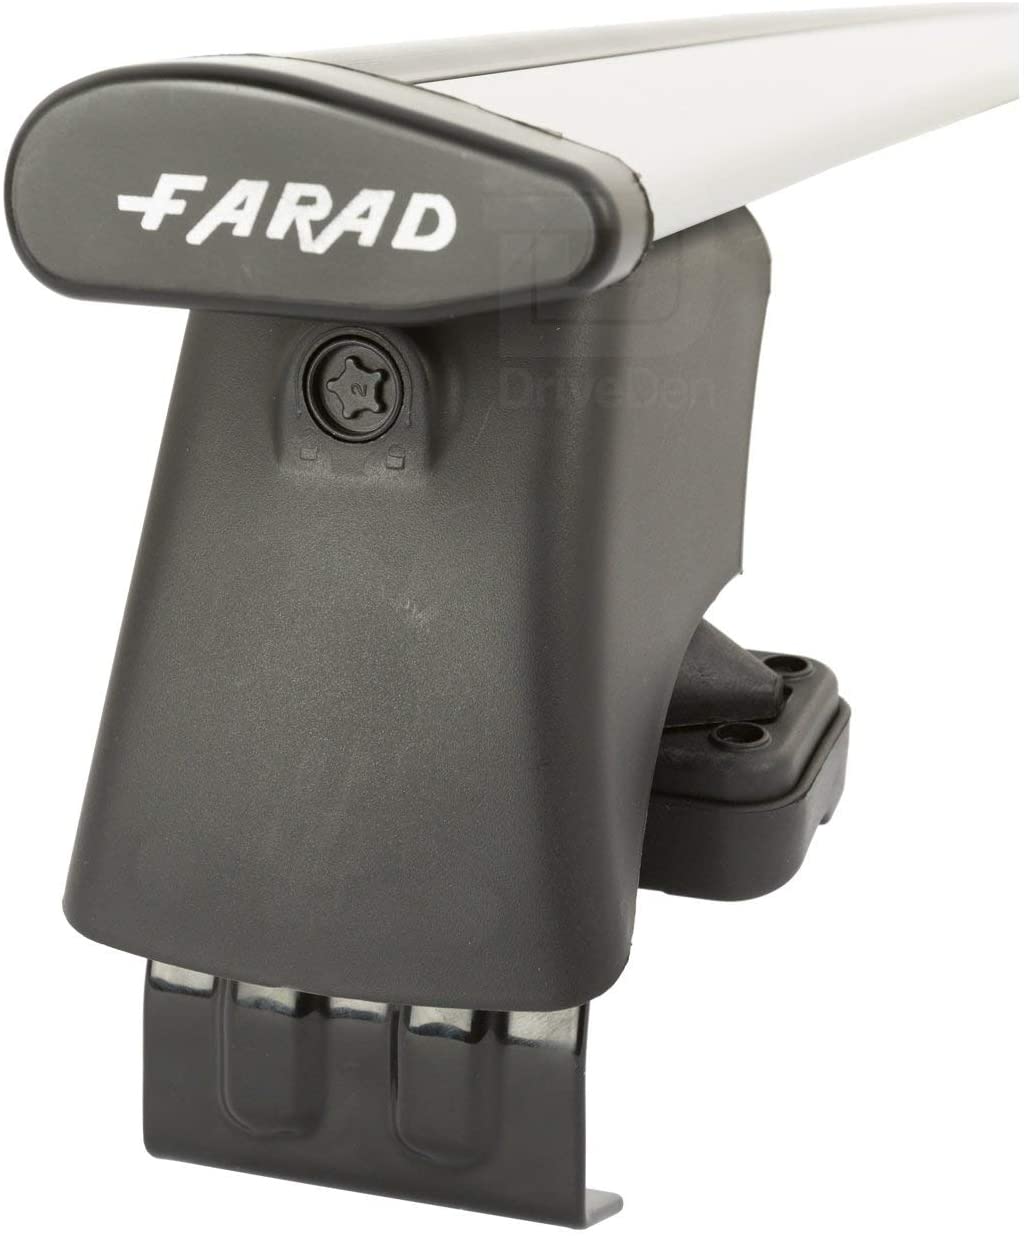 FARAD-Kit H2 per barre portatutto - Subaru Trezia 2011> (senza corrimano)